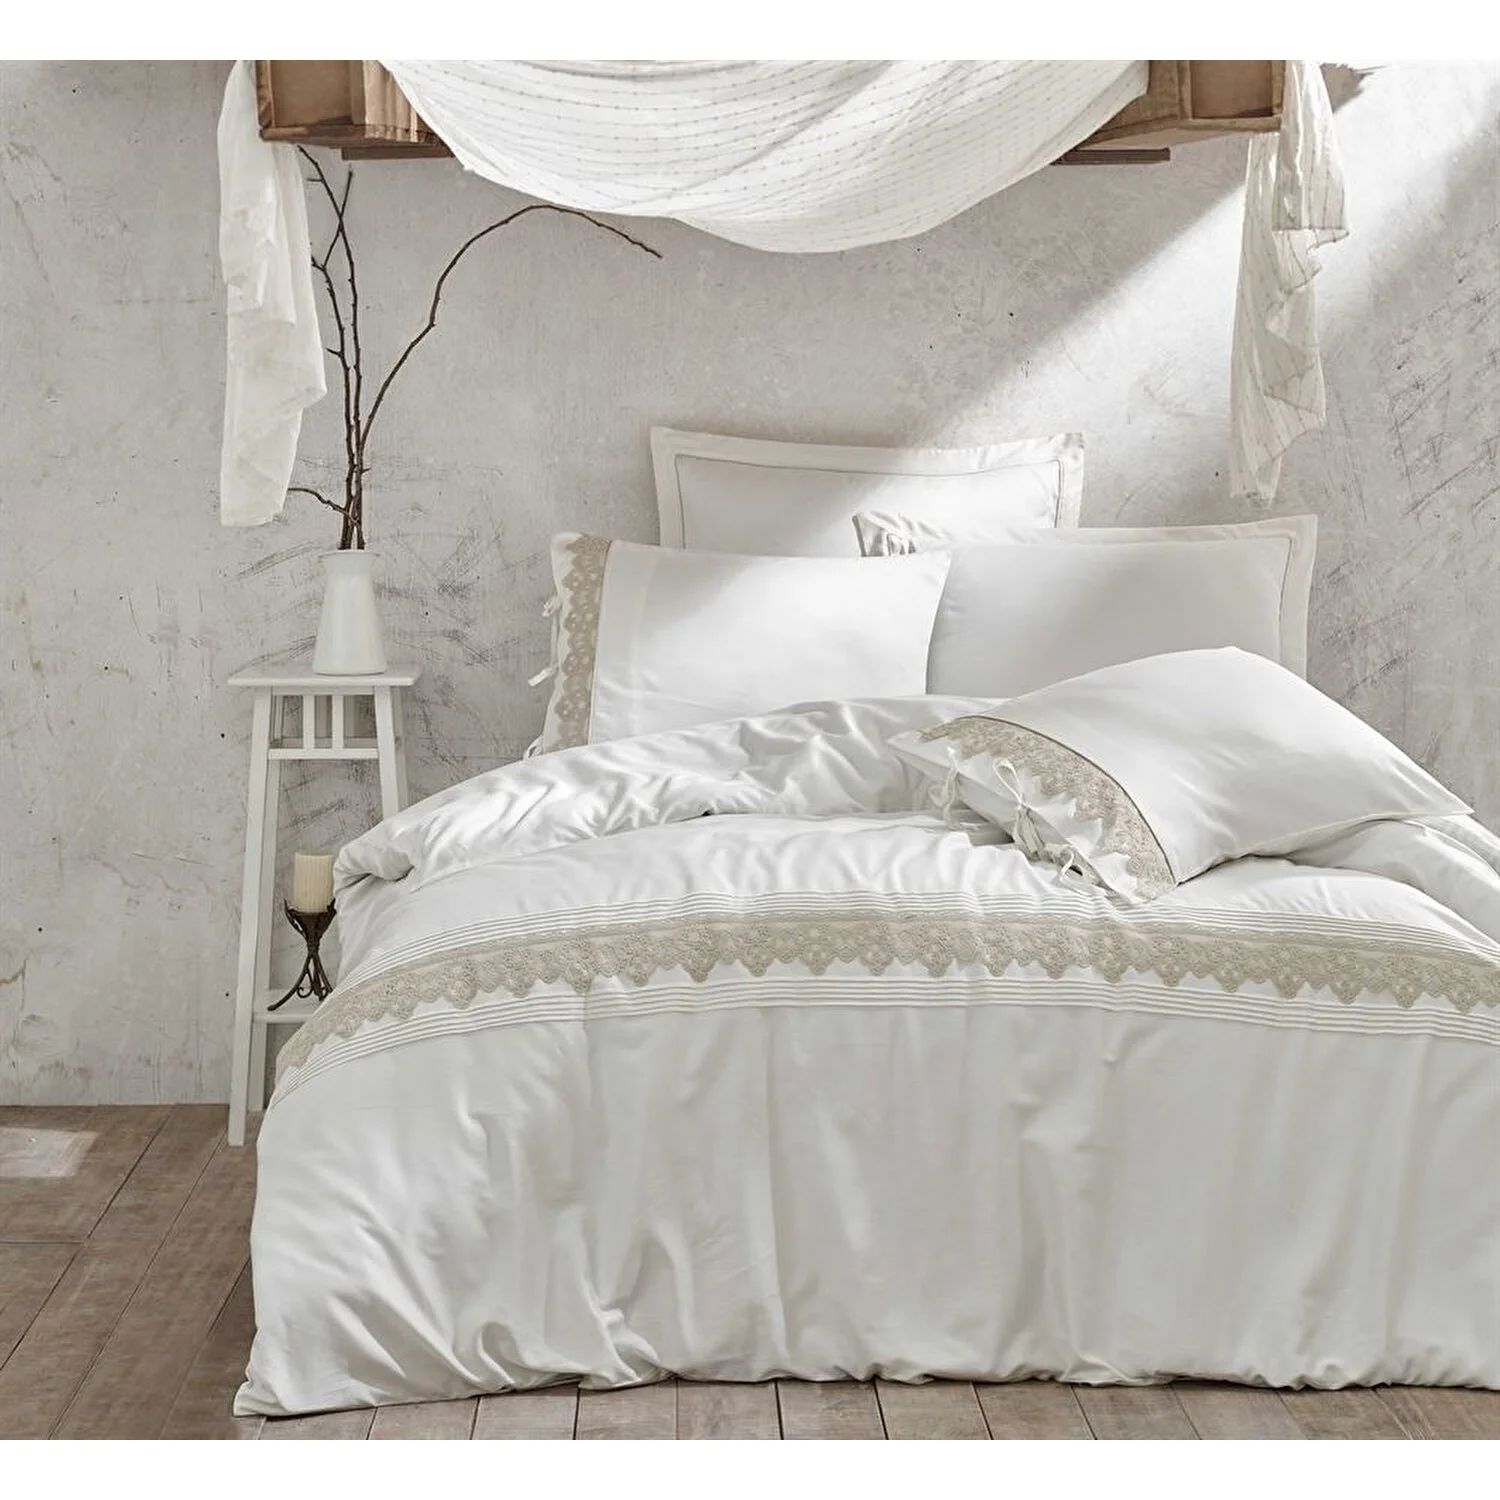 Комплект постельного белья Azra из экокотона кремового цвета